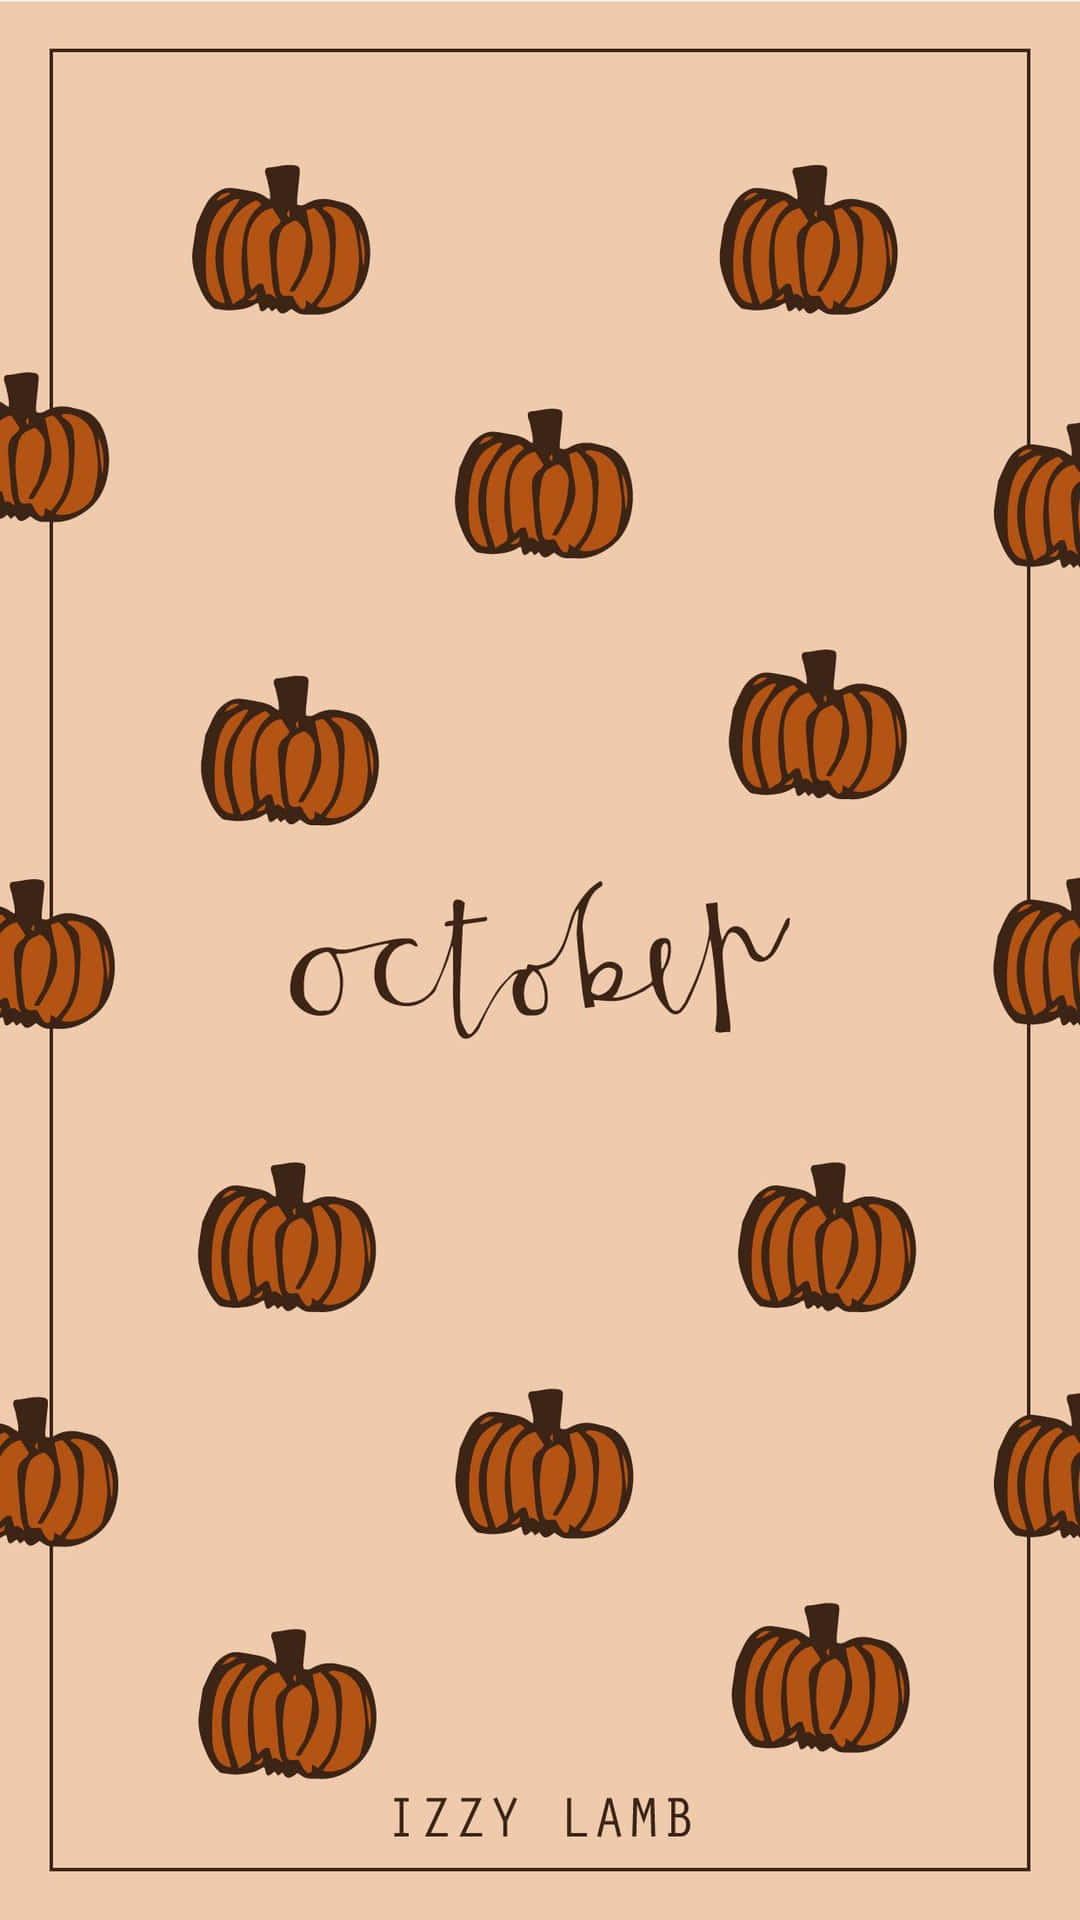 October - October October October October October